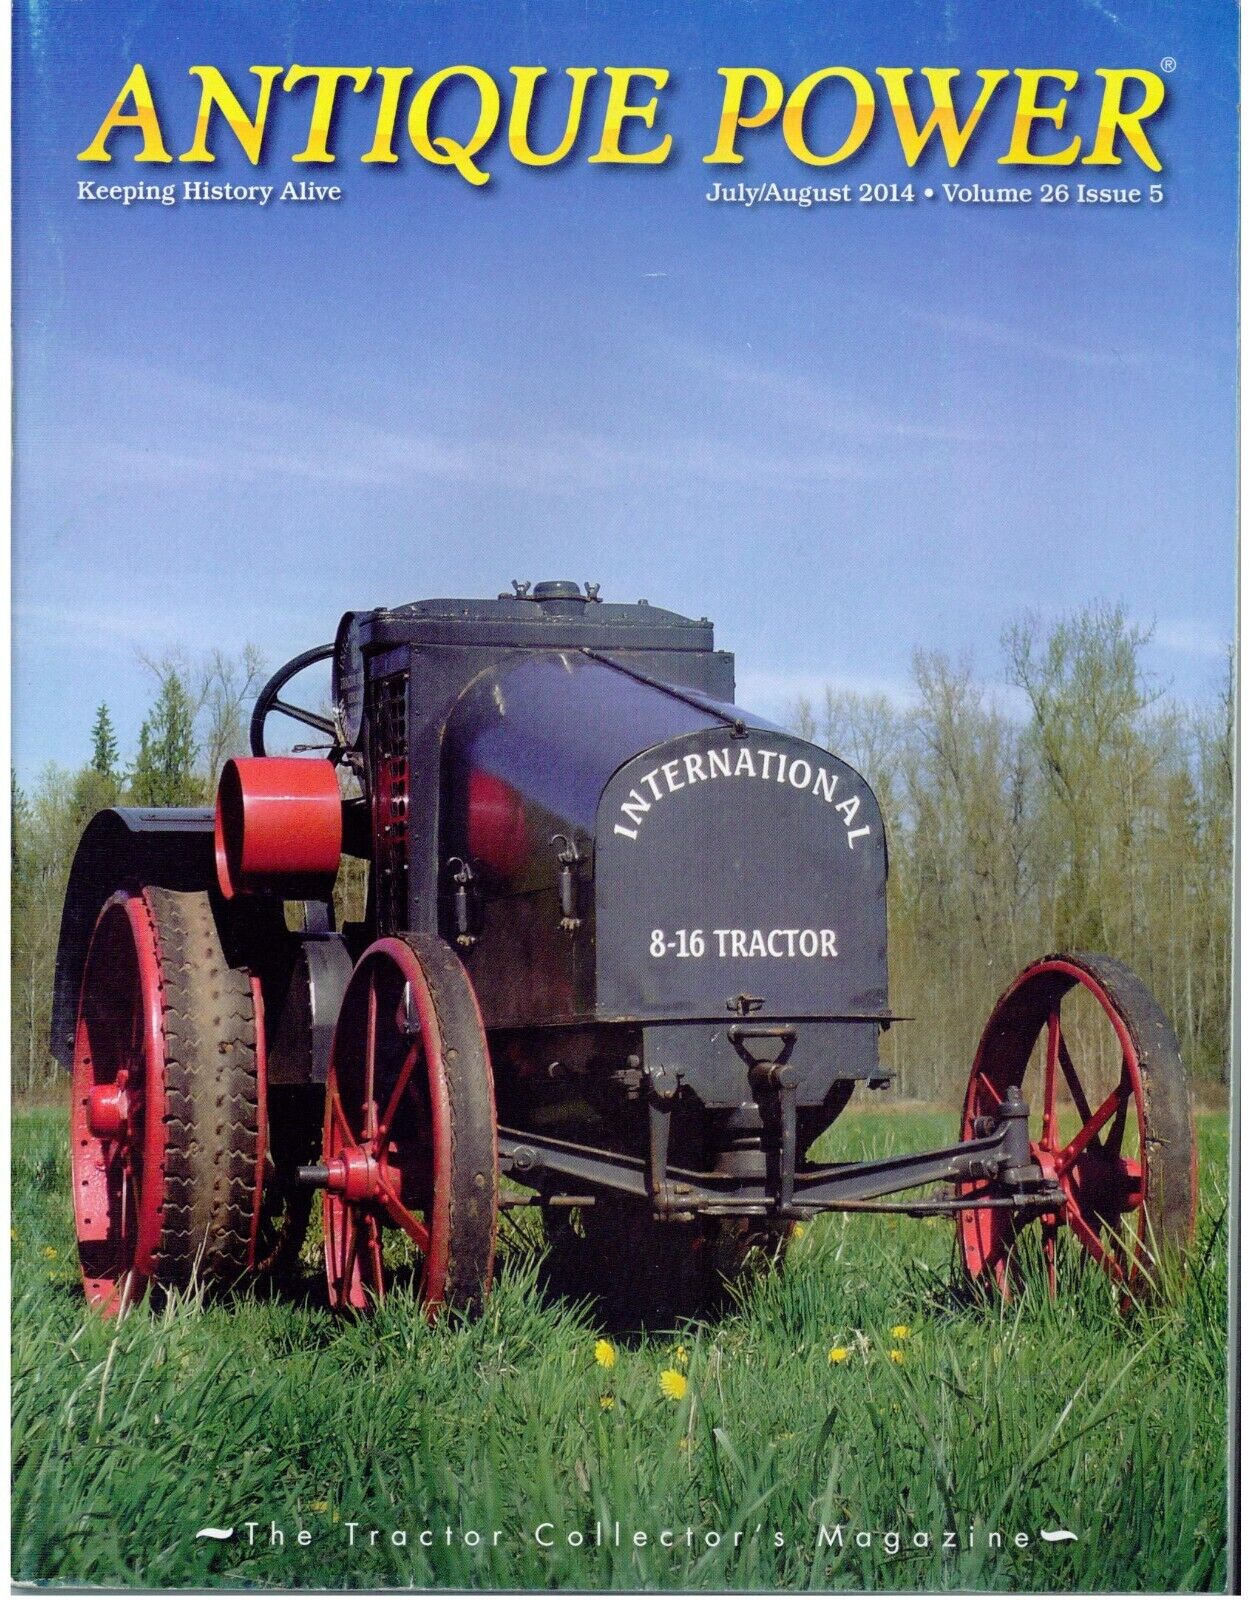 Arps tracks, Marmon Herrington Tracks, IH 8-16 tractor, Wallis Cub, Worthington